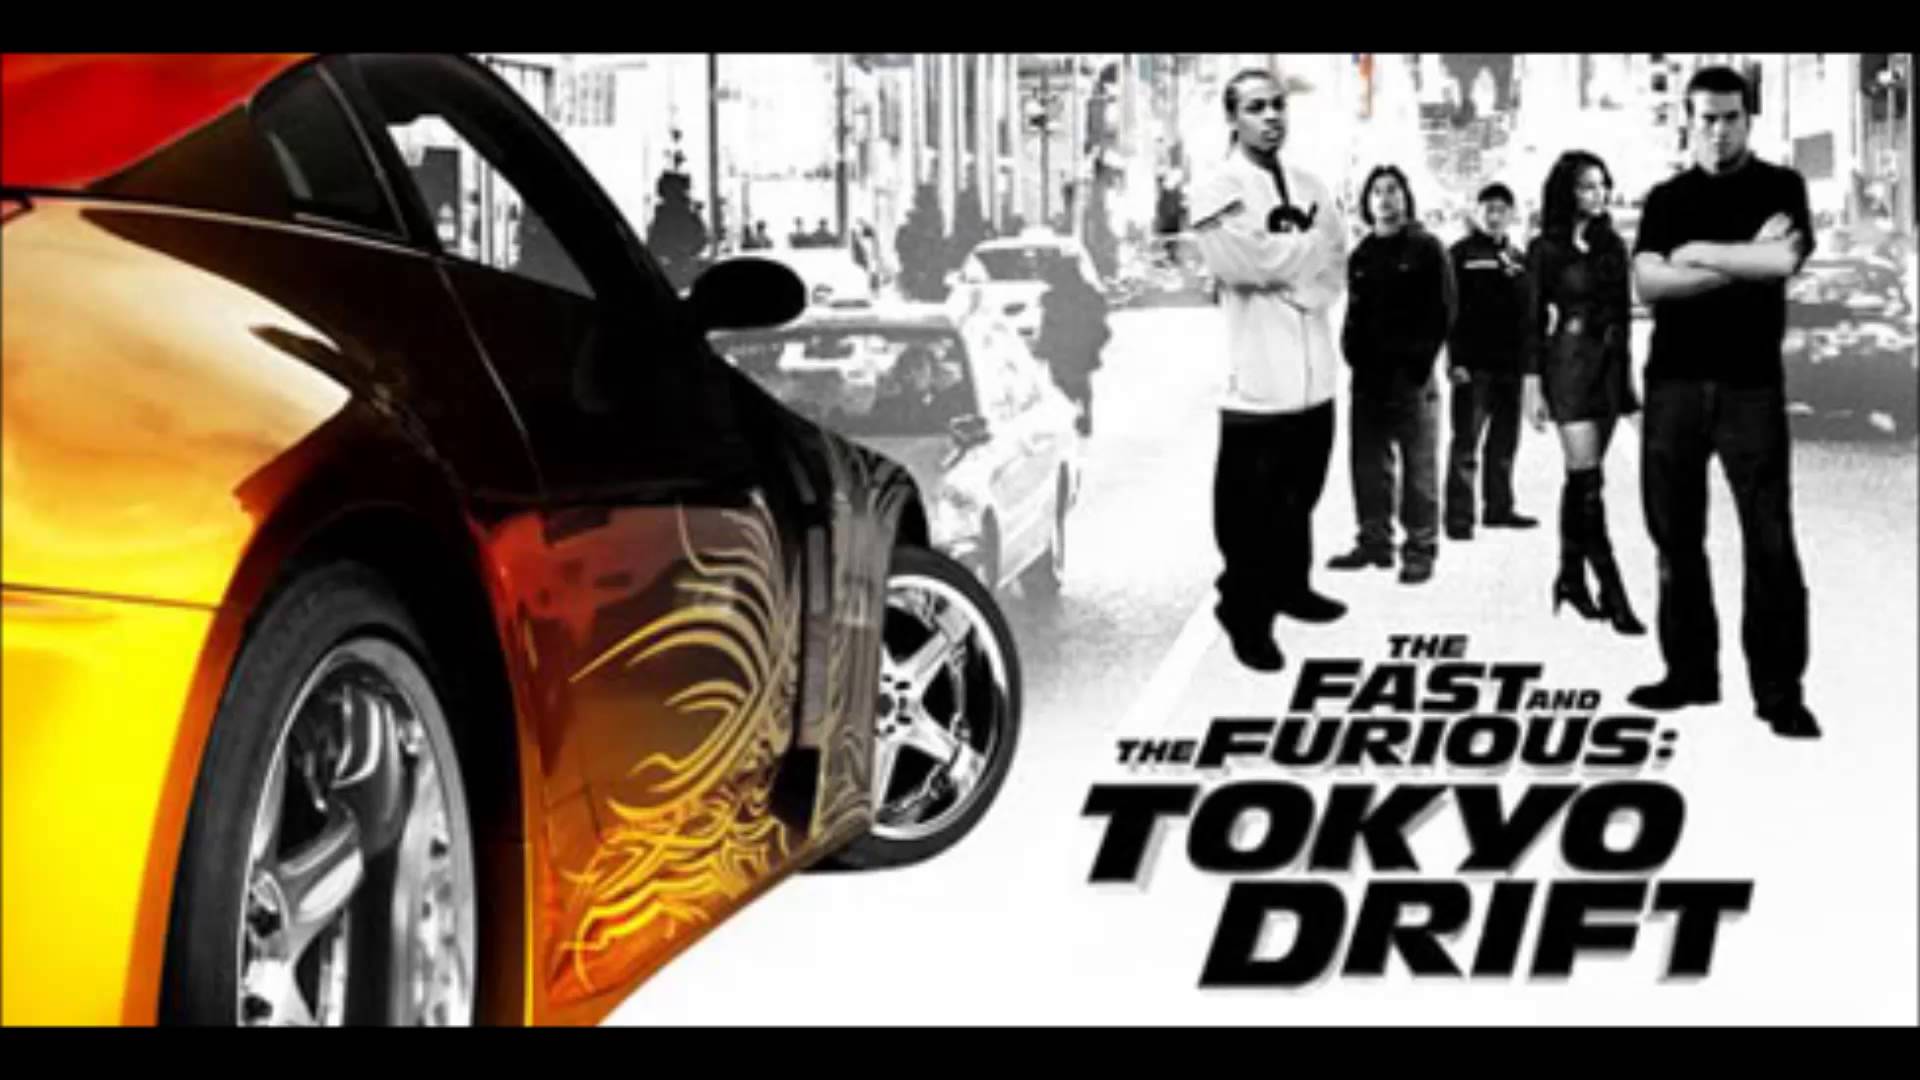 Tokyo drift megastylez. Тройной Форсаж: Токийский дрифт (2006) Постер. Тройной Форсаж Токийский дрифт 2006 обложка.